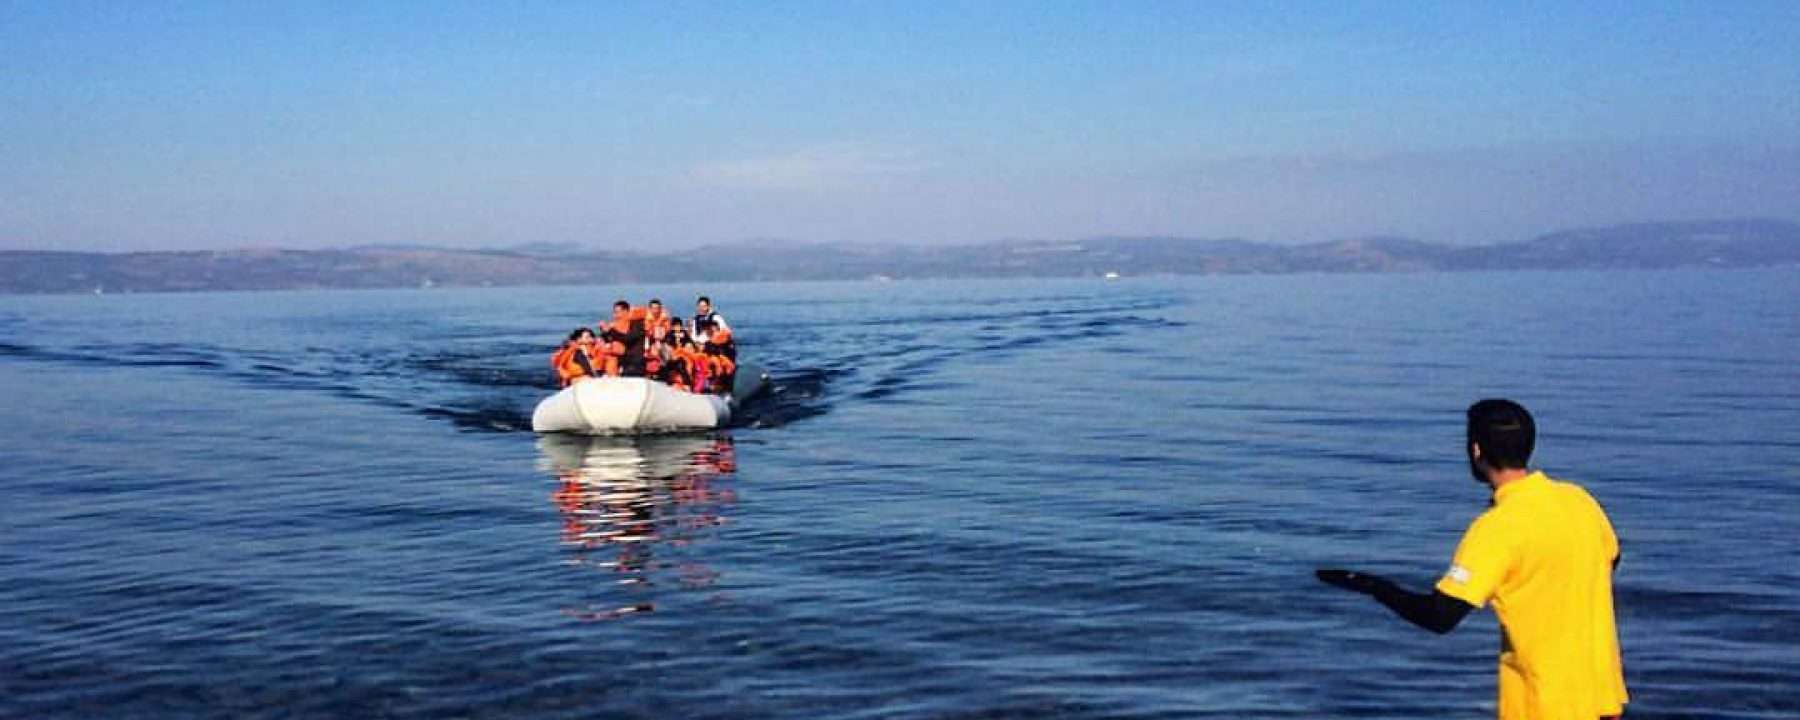 Δεν έχει τέλος...28 Σύριοι εντοπίστηκαν σε νησάκι κοντά στη Σύμη